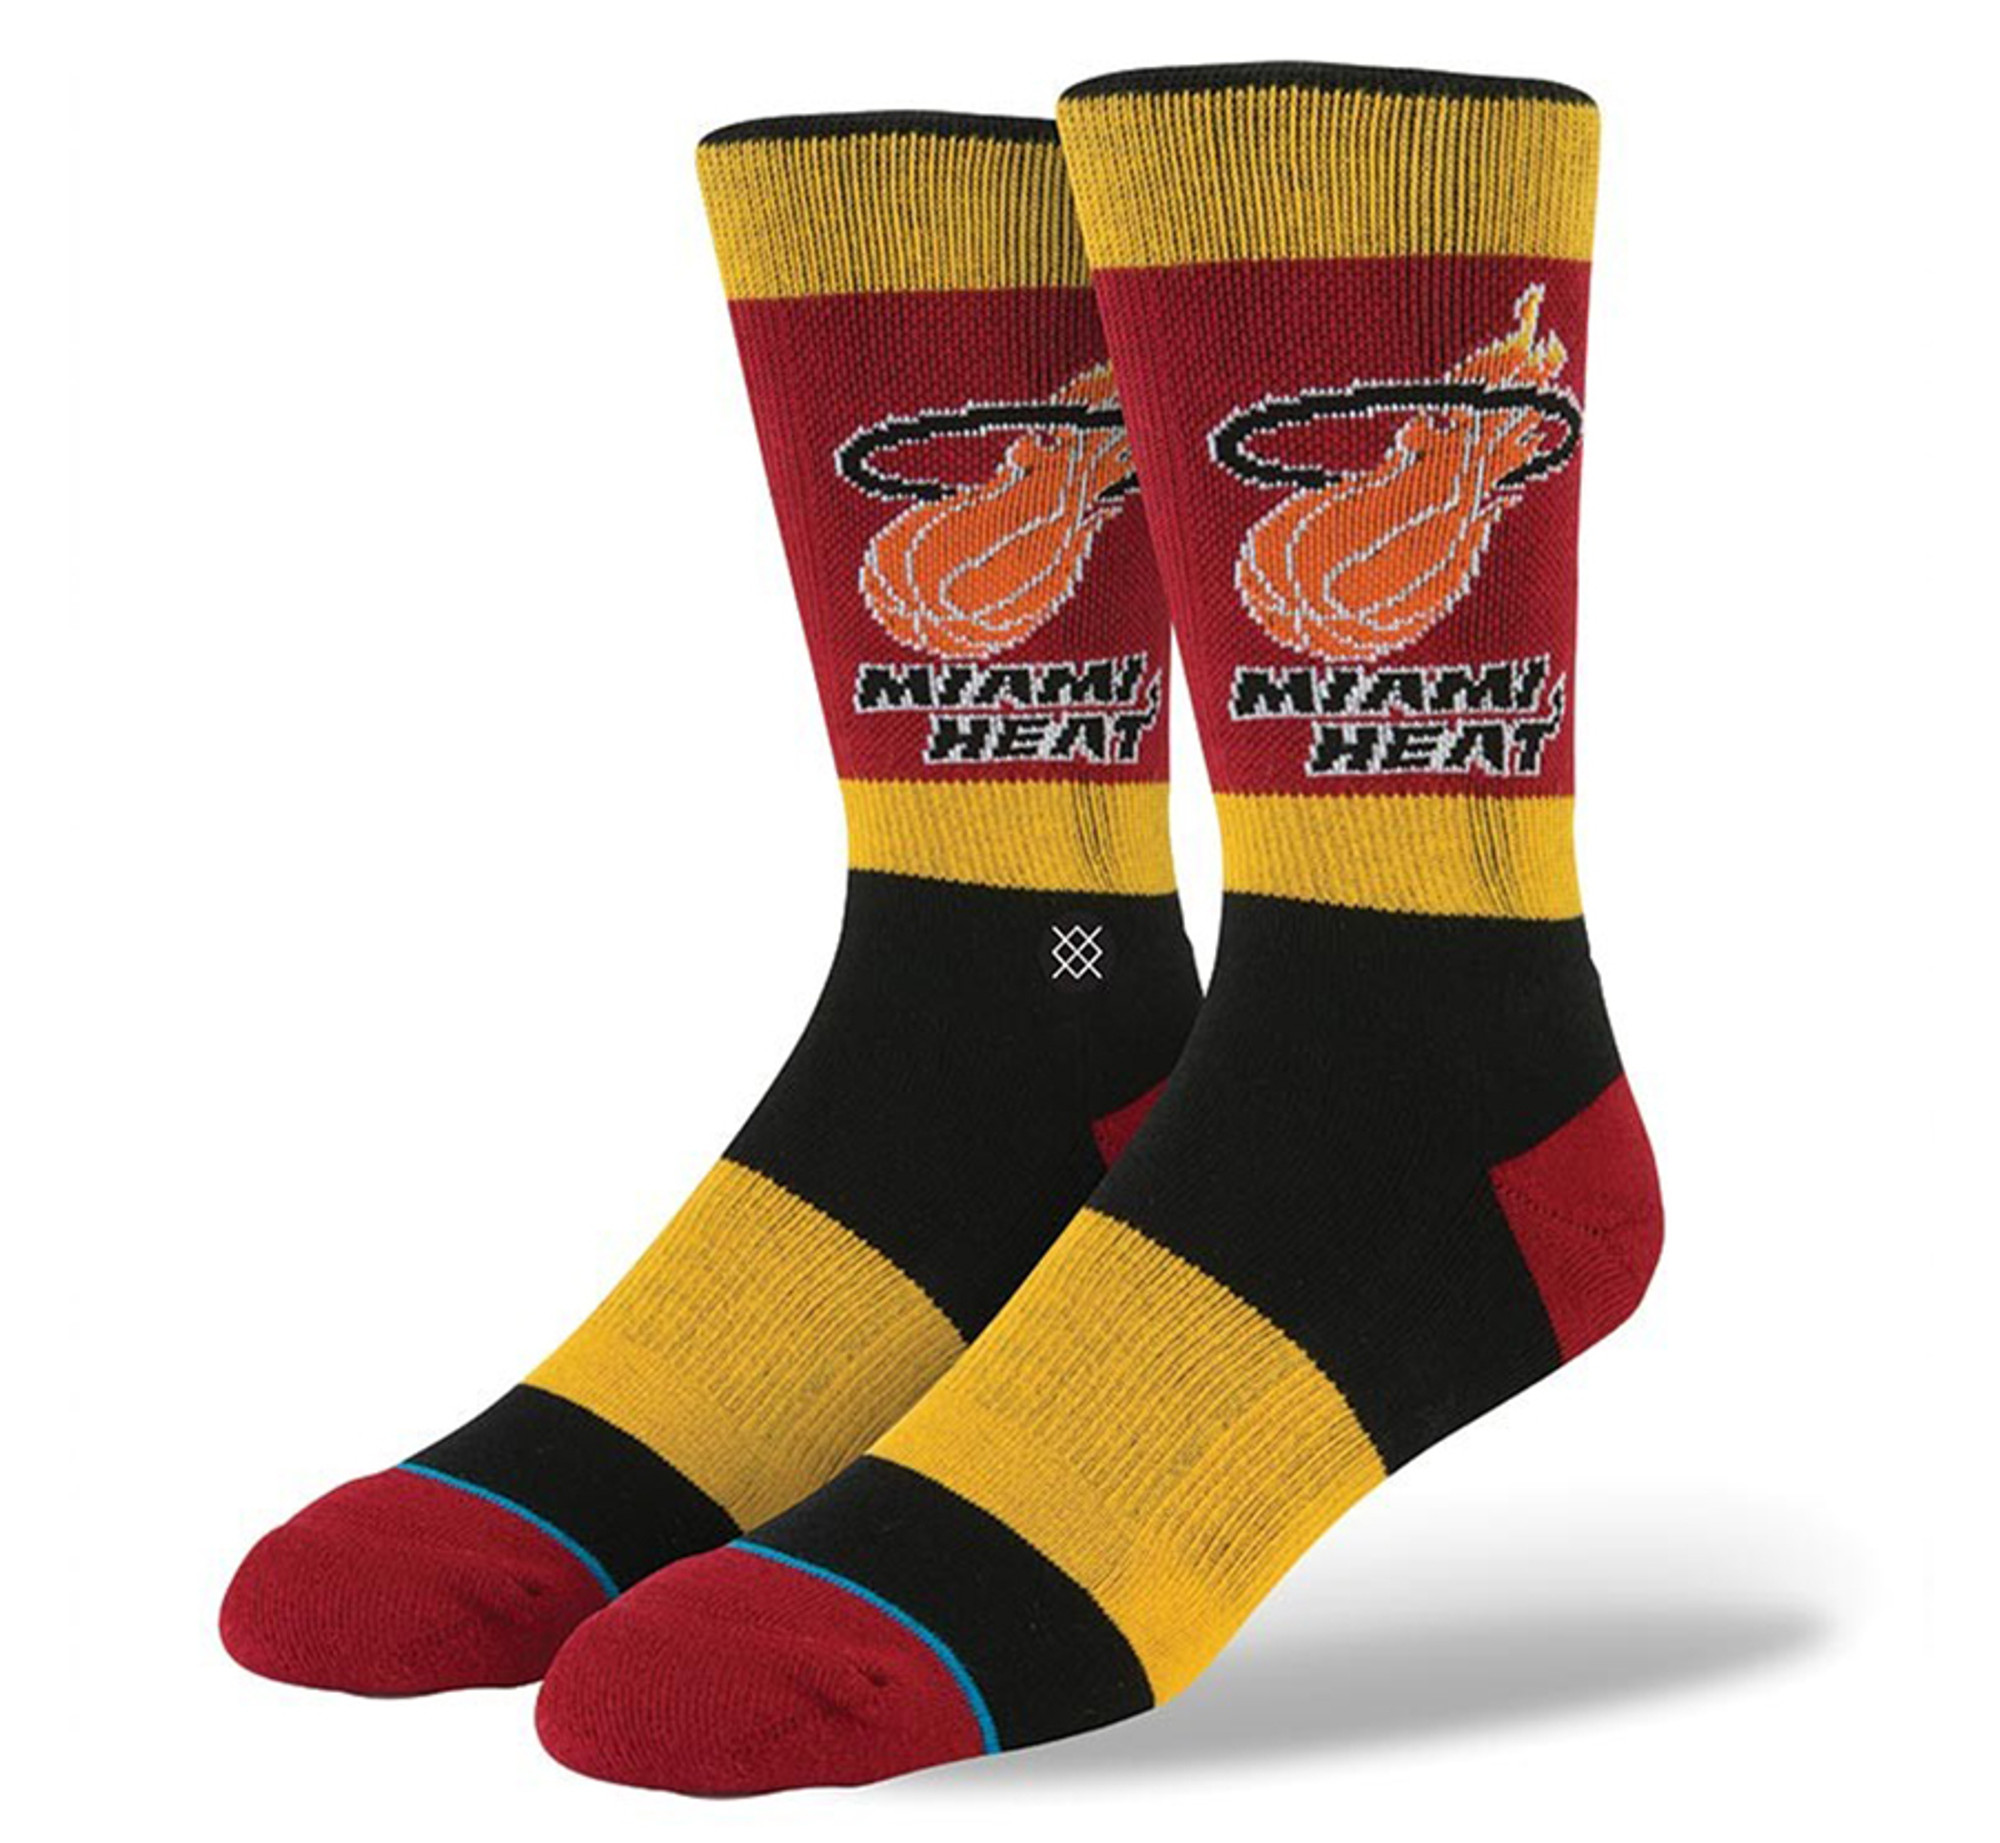 Stance Miami Heat socks